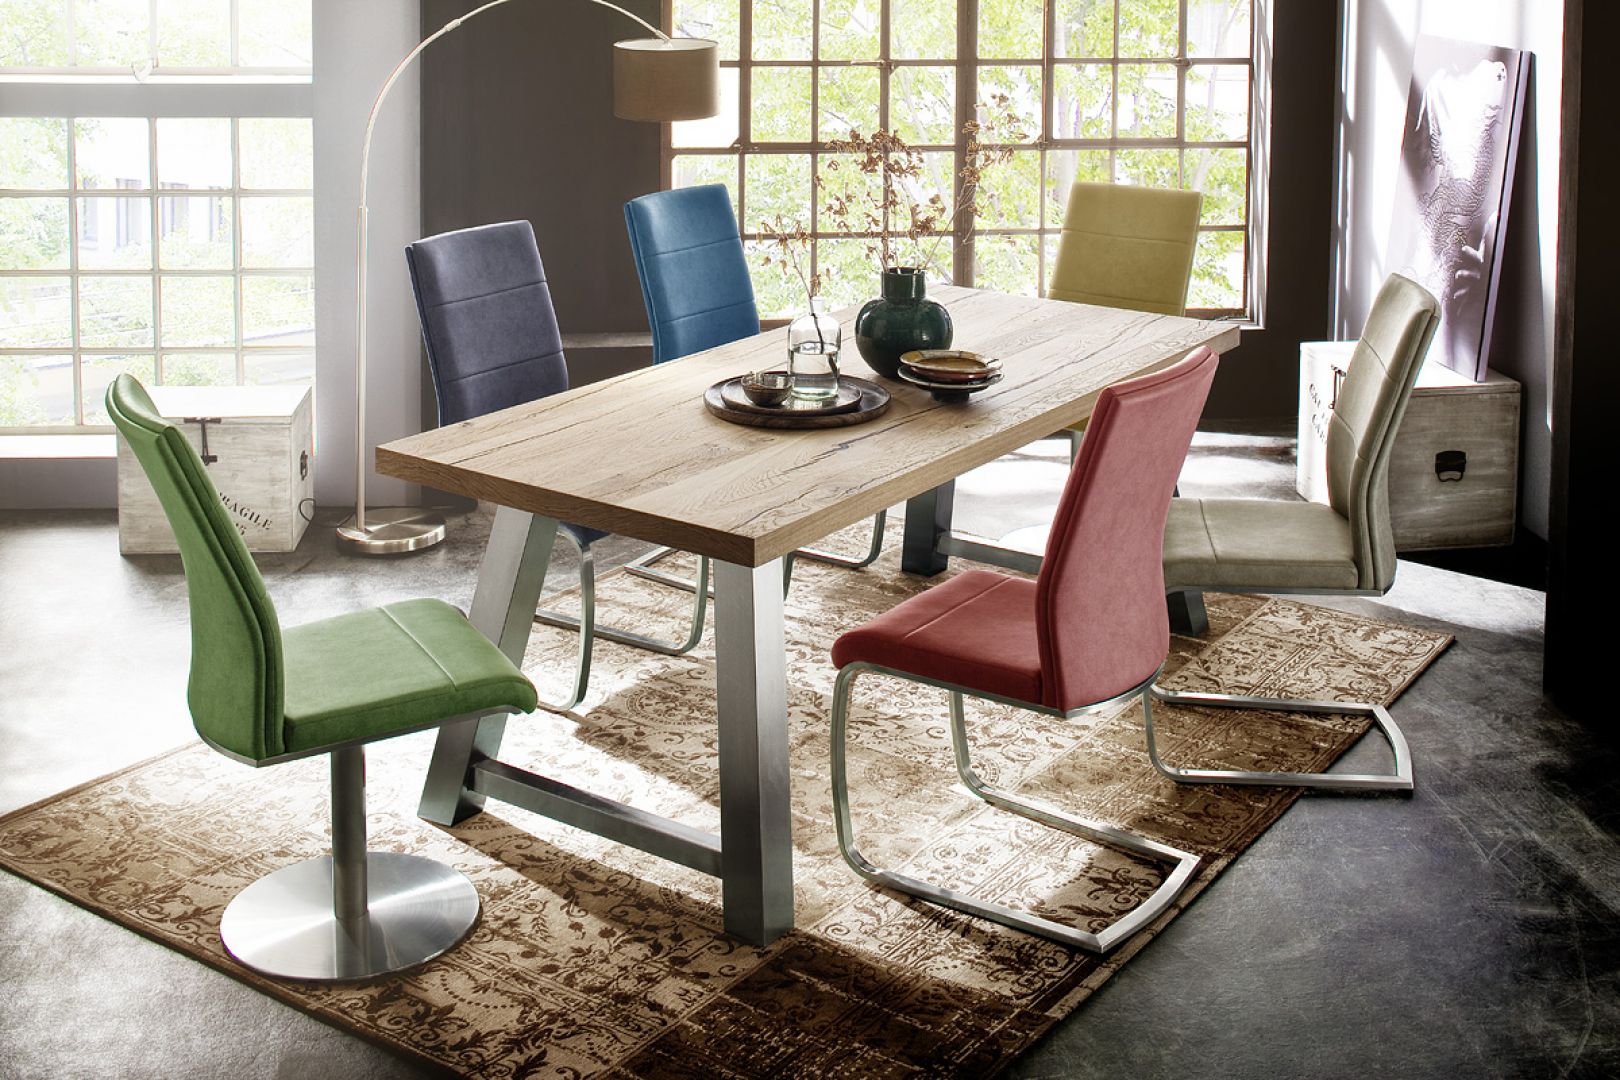 Drewniany stół Alvaro pięknie komponuje się z kolorowymi krzesłami. Całość prezentuje się bardzo stylowo. Fot. MC Akcent